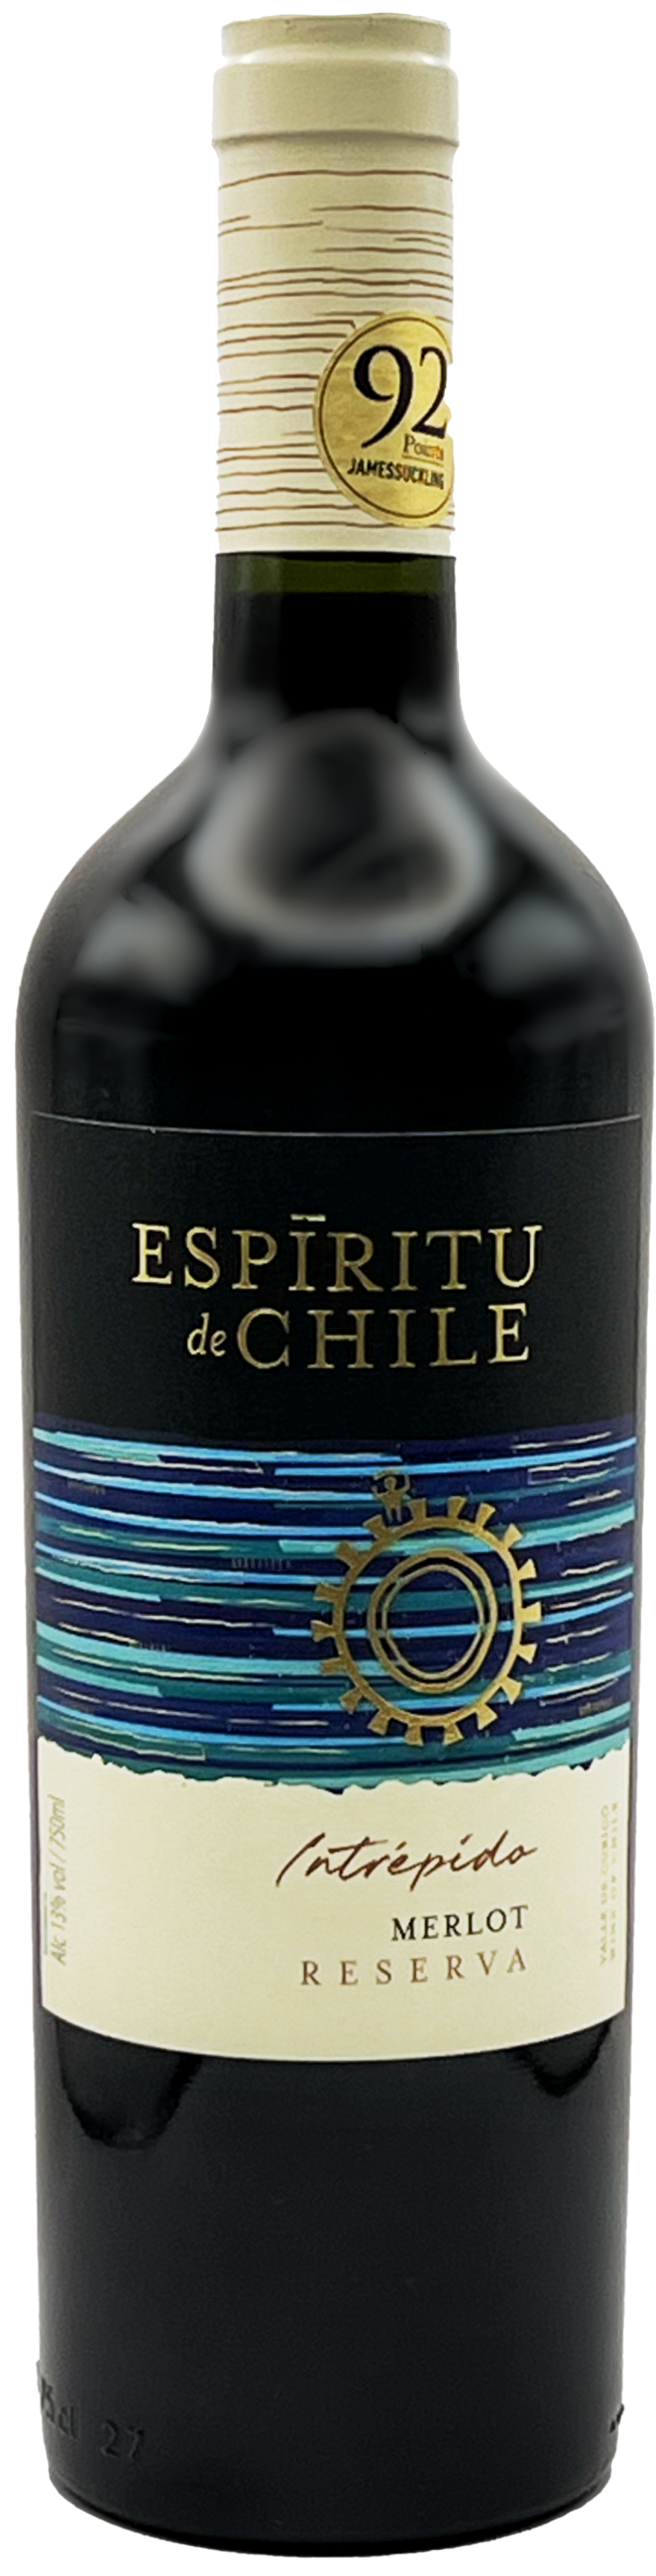 Espiritu de Chile Reserva Merlot 2019 - Bottle Values